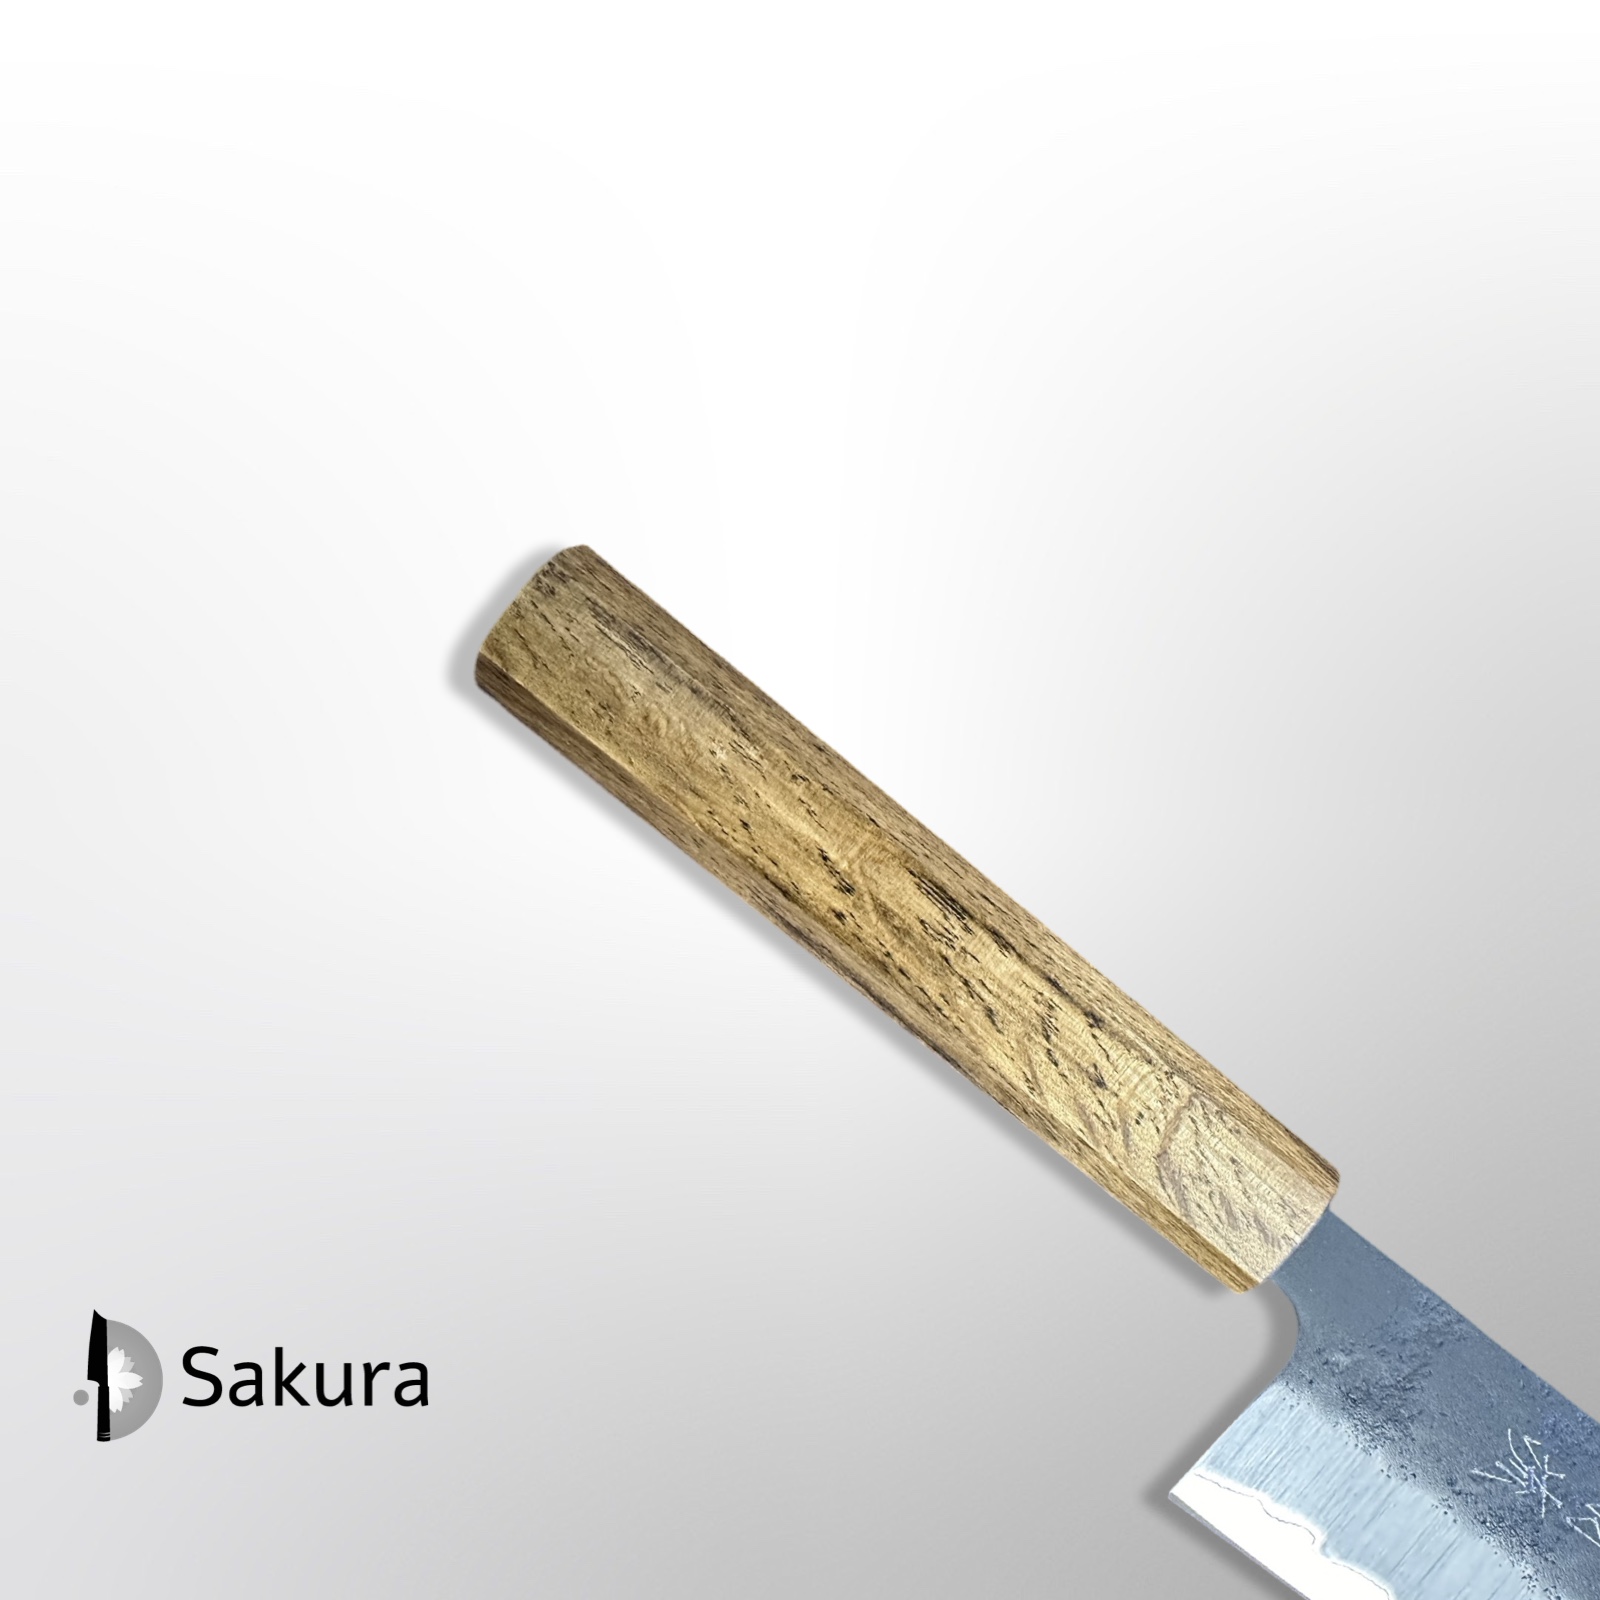 סכין שף רב-תכליתית גיוטו 240מ״מ פלדת פחמן Aogami-Super עטופה פלדת אל-חלד גימור נשיג׳י שחור ידית אחיזה מסורתית עץ אלון שחור ŌUL Sakai יפן [SKFUKU236262 -18]